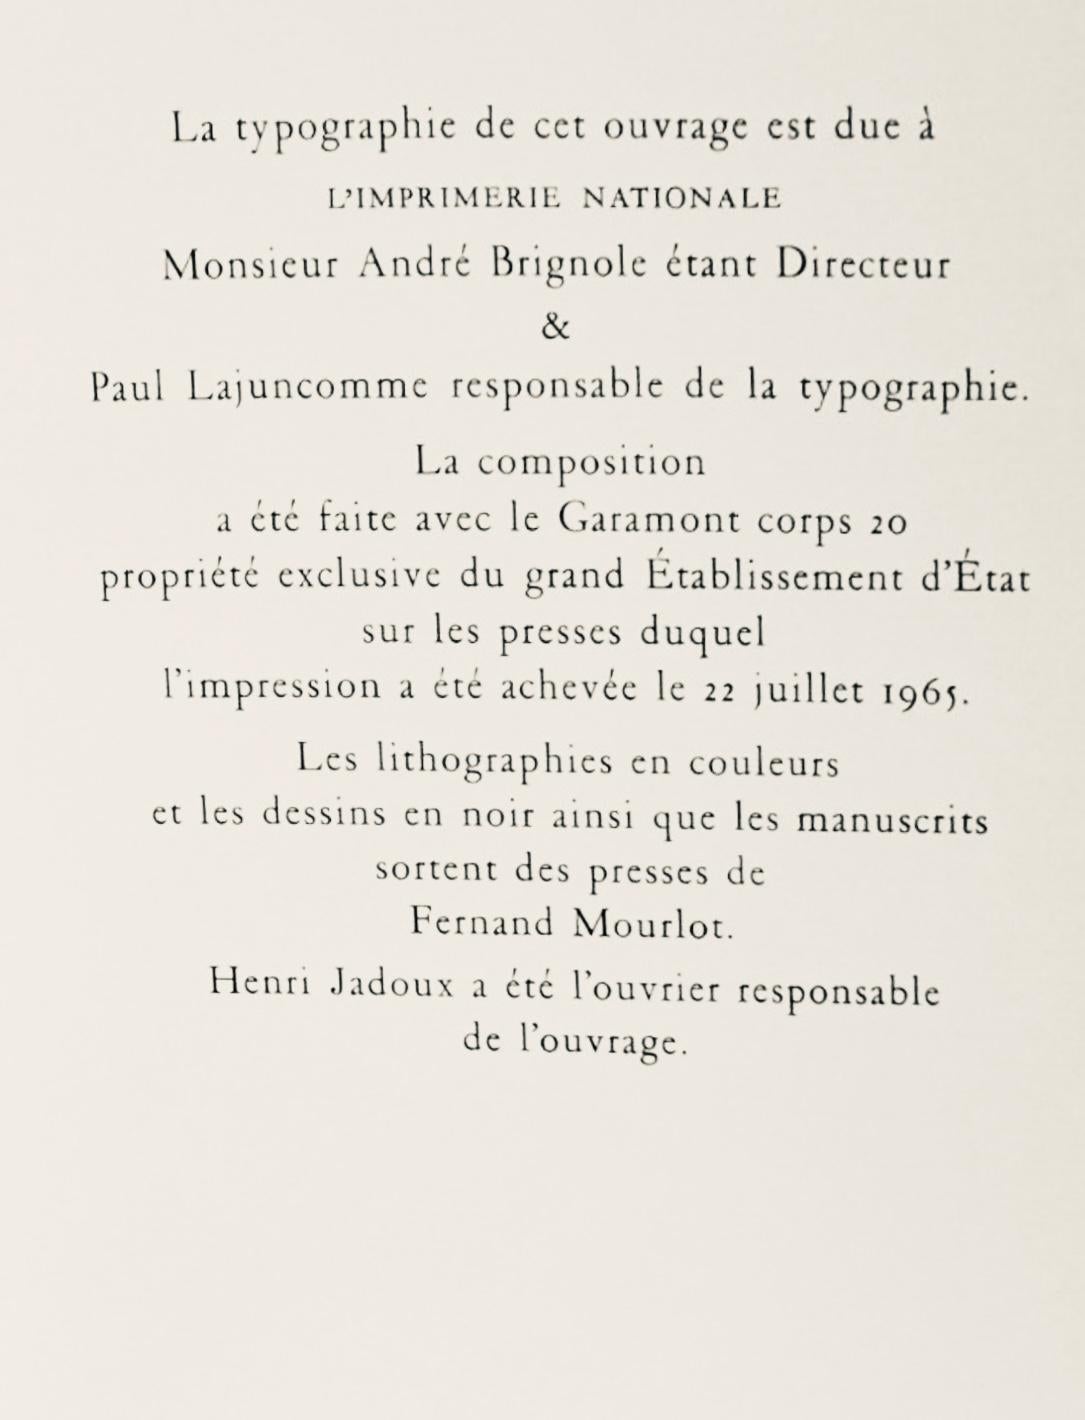 Gromaire, Dessin, Lettre à mon peintre Raoul Dufy (after) For Sale 3